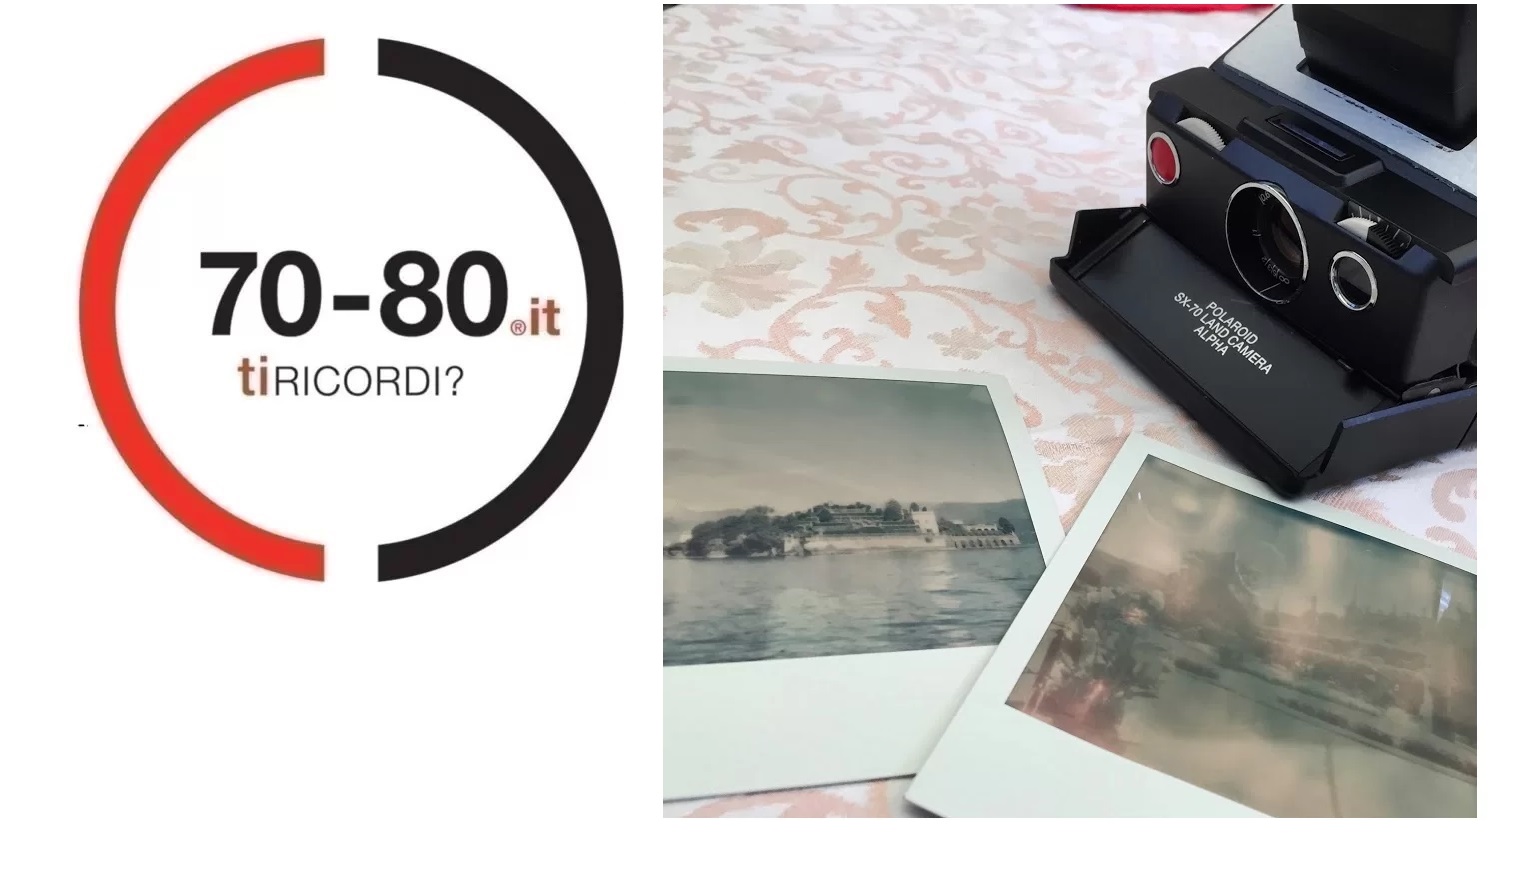 1972. Con la SX-70 esplode il mito della Polaroid, la fotocamera che in  pochi secondi offre la foto già pronta, fra i regali di Natale più ambiti 